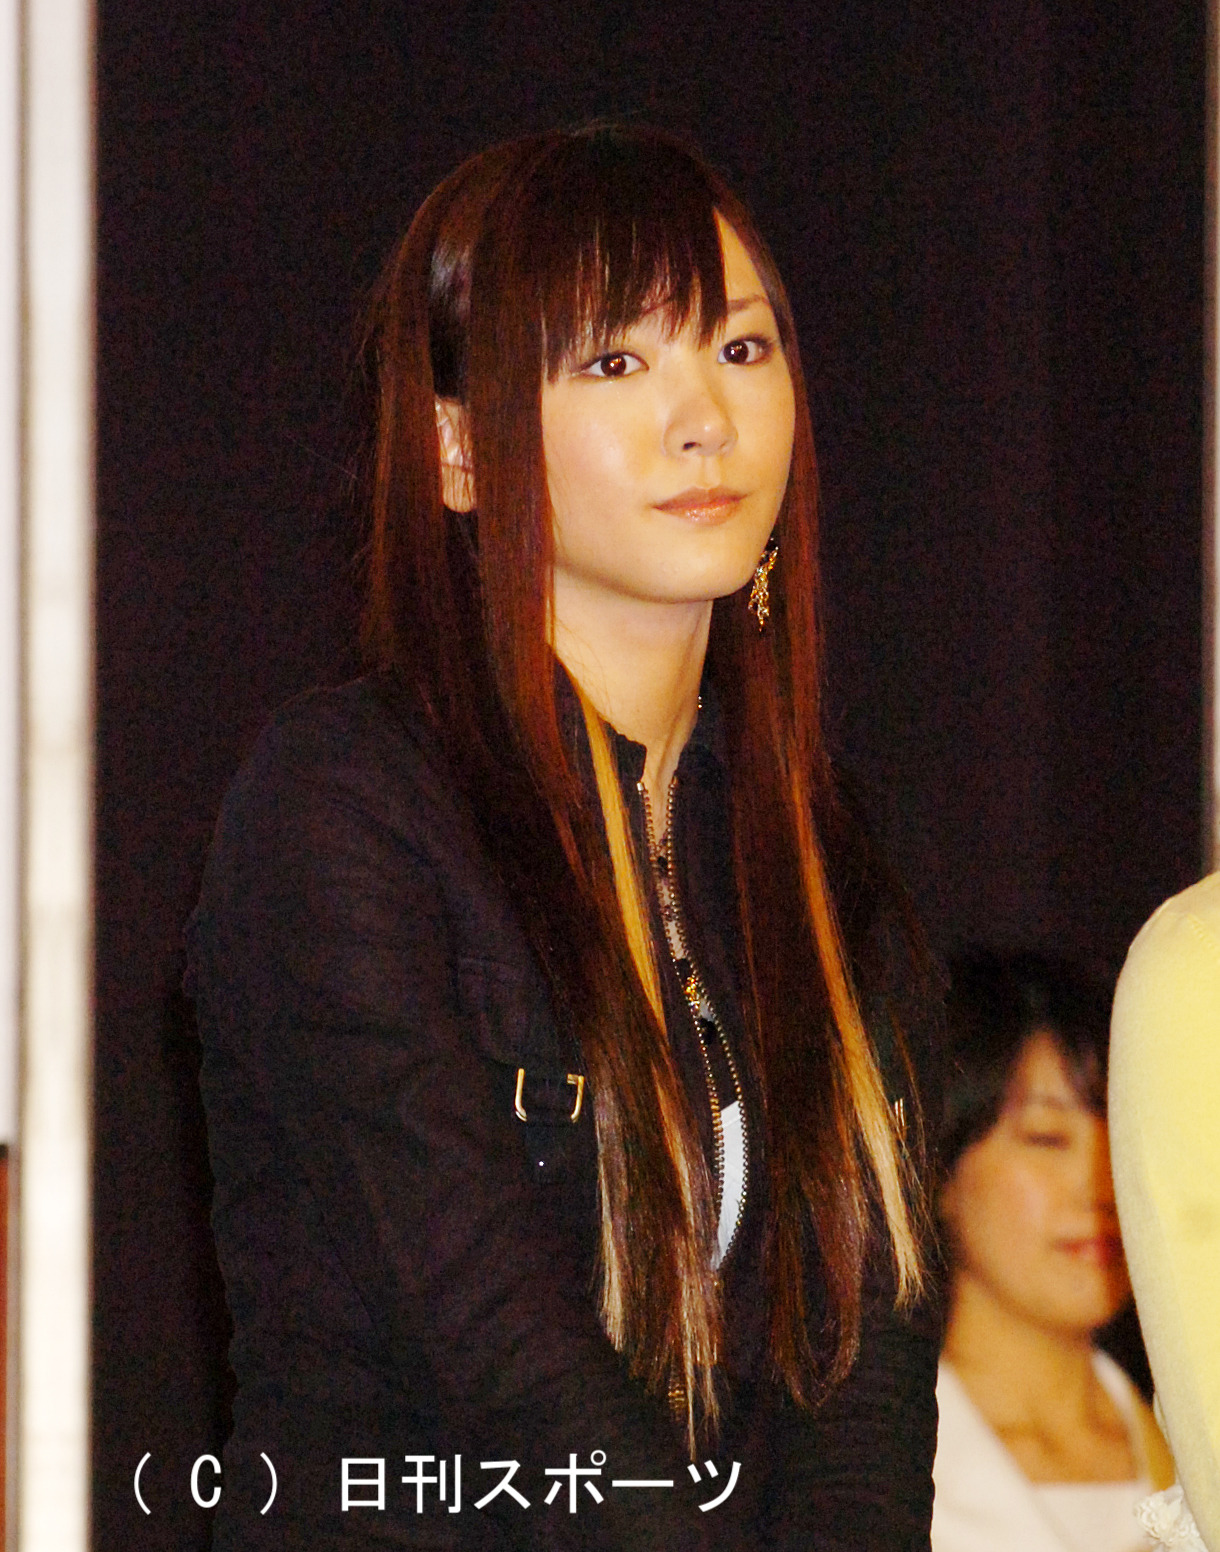 ドラマ「ギャルサー」で渋谷ギャルを演じた17歳の新垣結衣はやや緊張した表情（2006年4月）